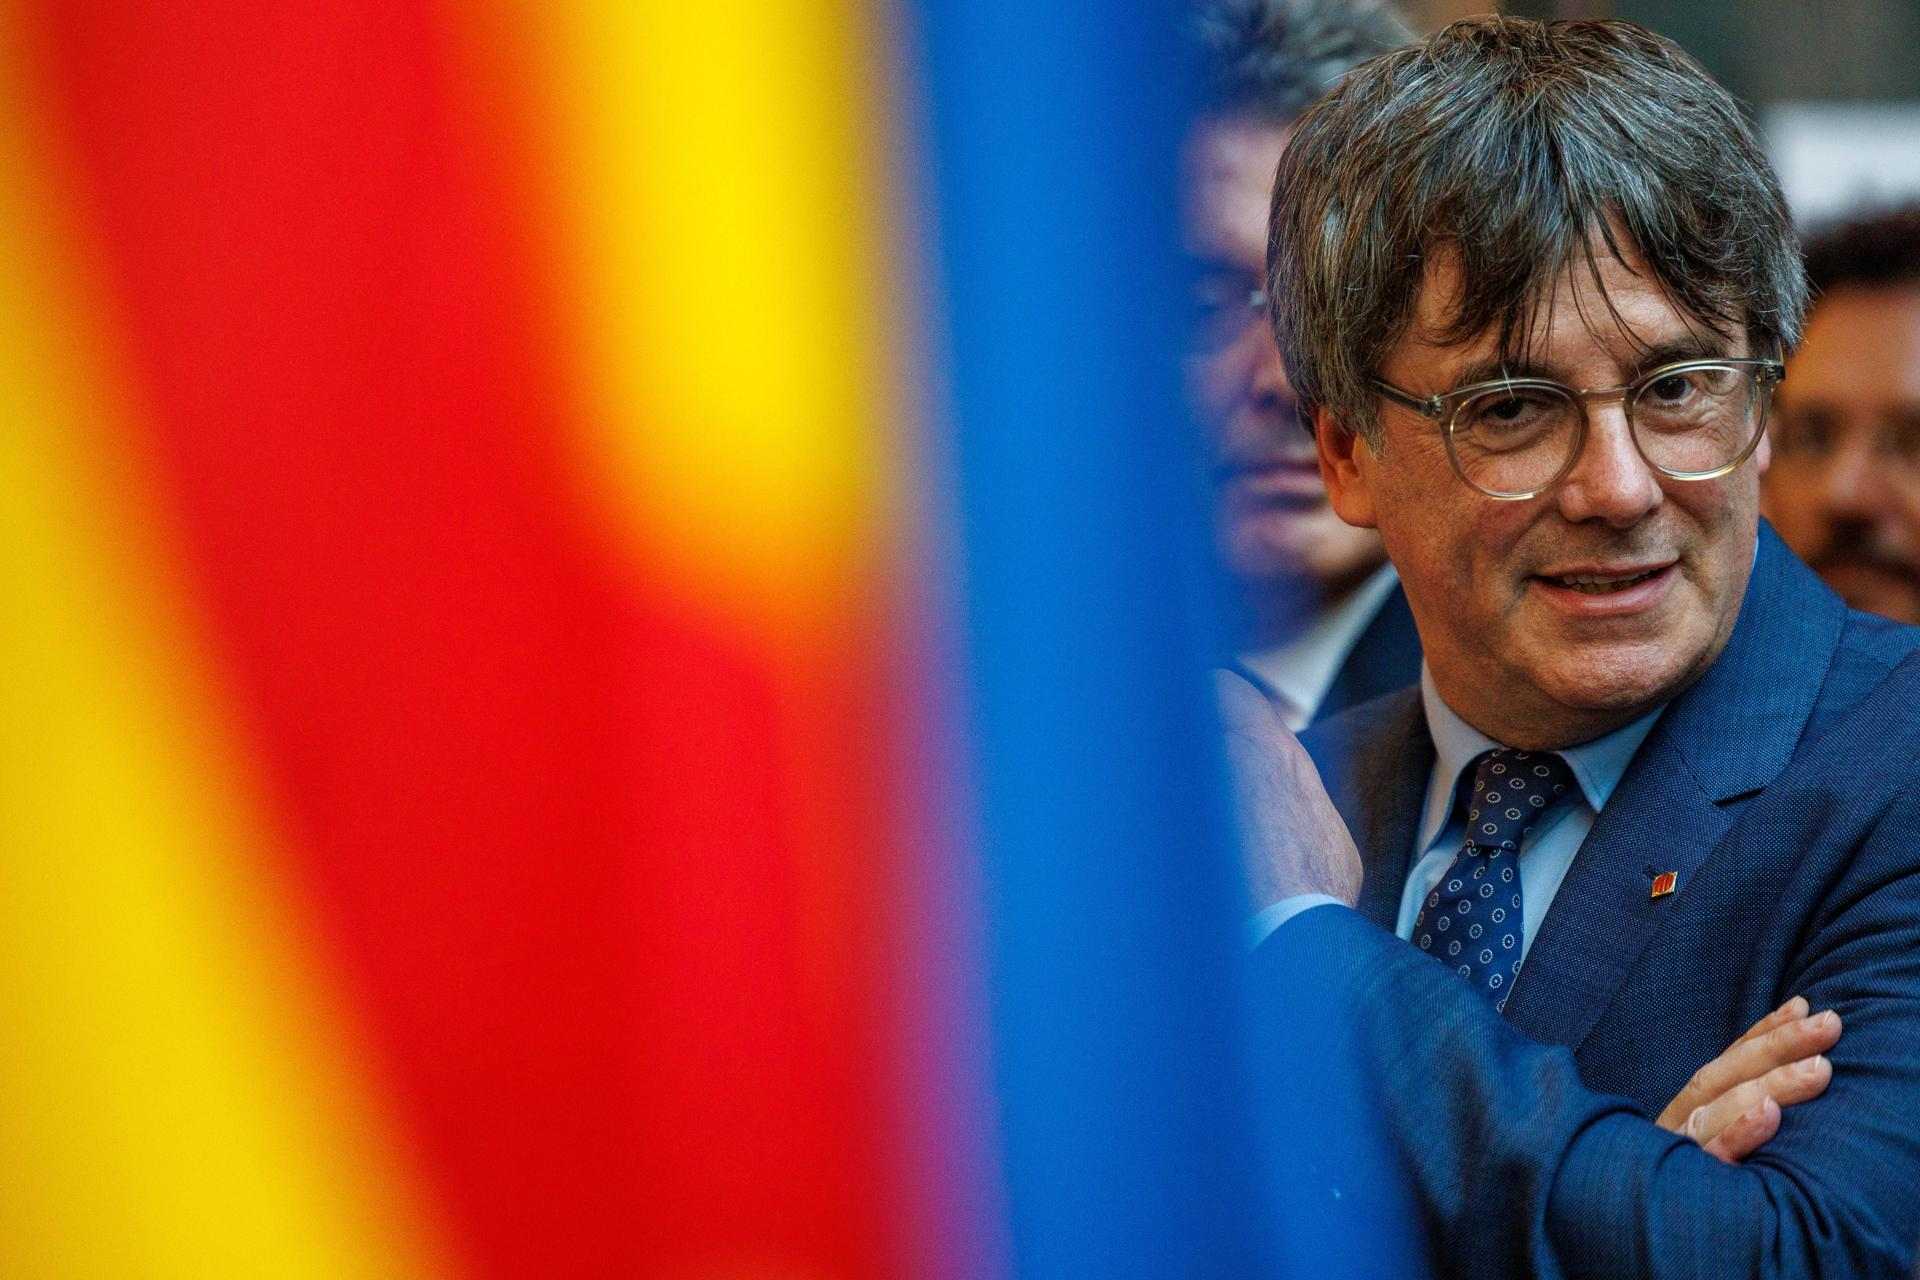 Junts és el partit guanyador de les negociacions d'investidura pels catalans, segons una enquesta